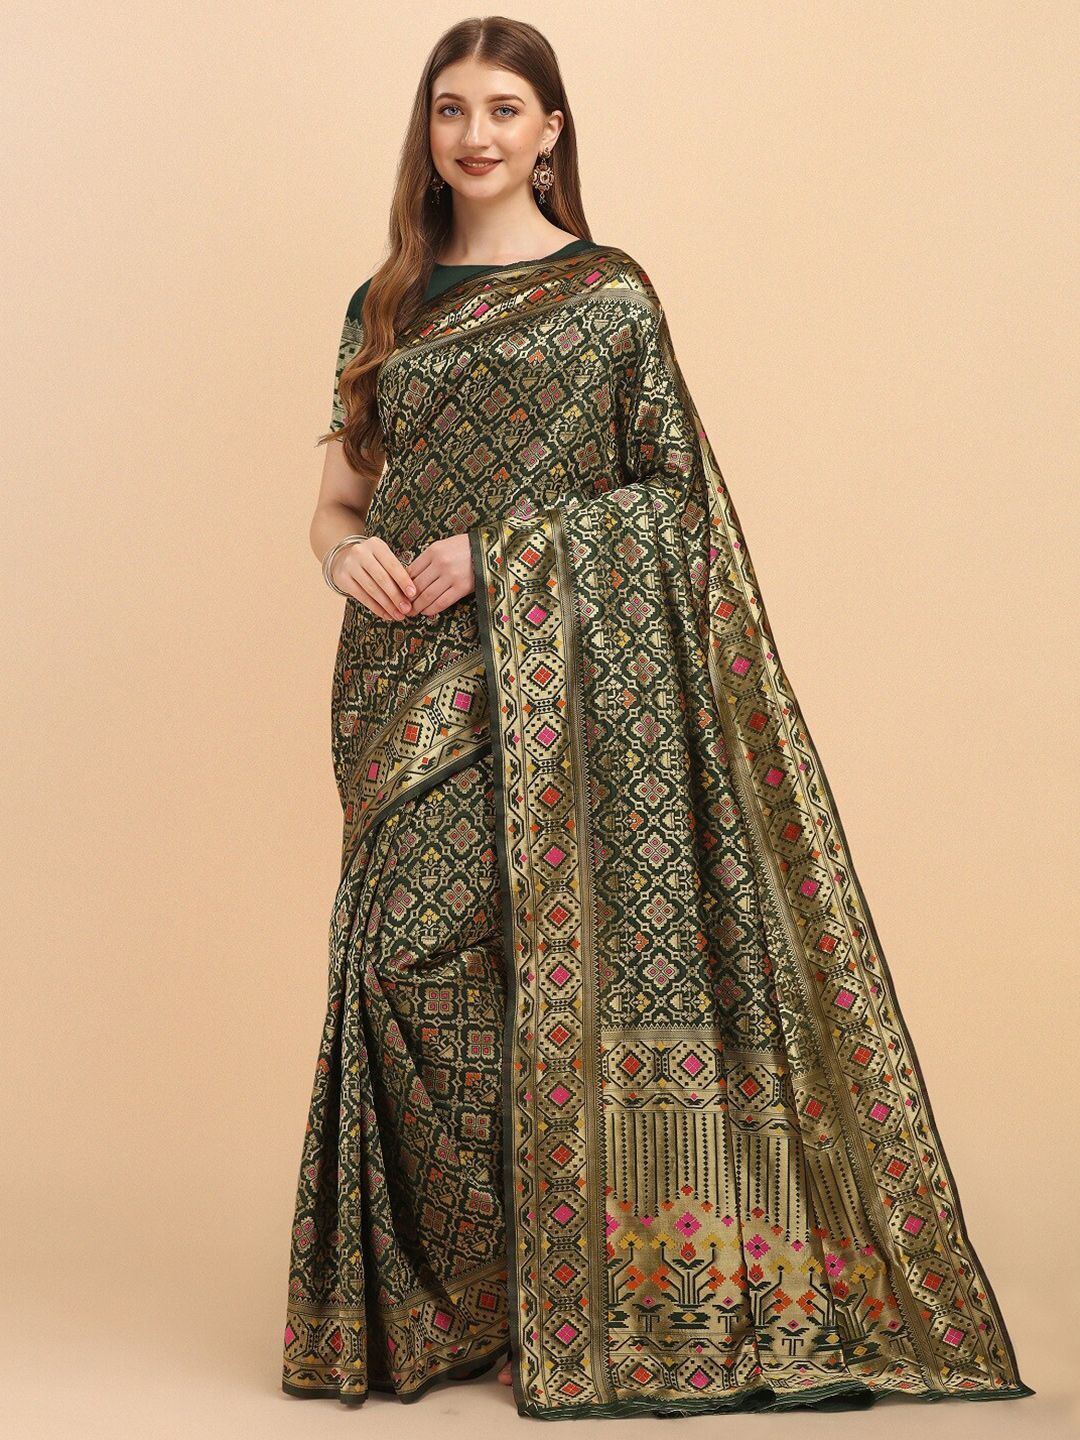 Naishu Trendz Ethnic Motifs Zari Pure Silk Kanjeevaram Saree Price in India